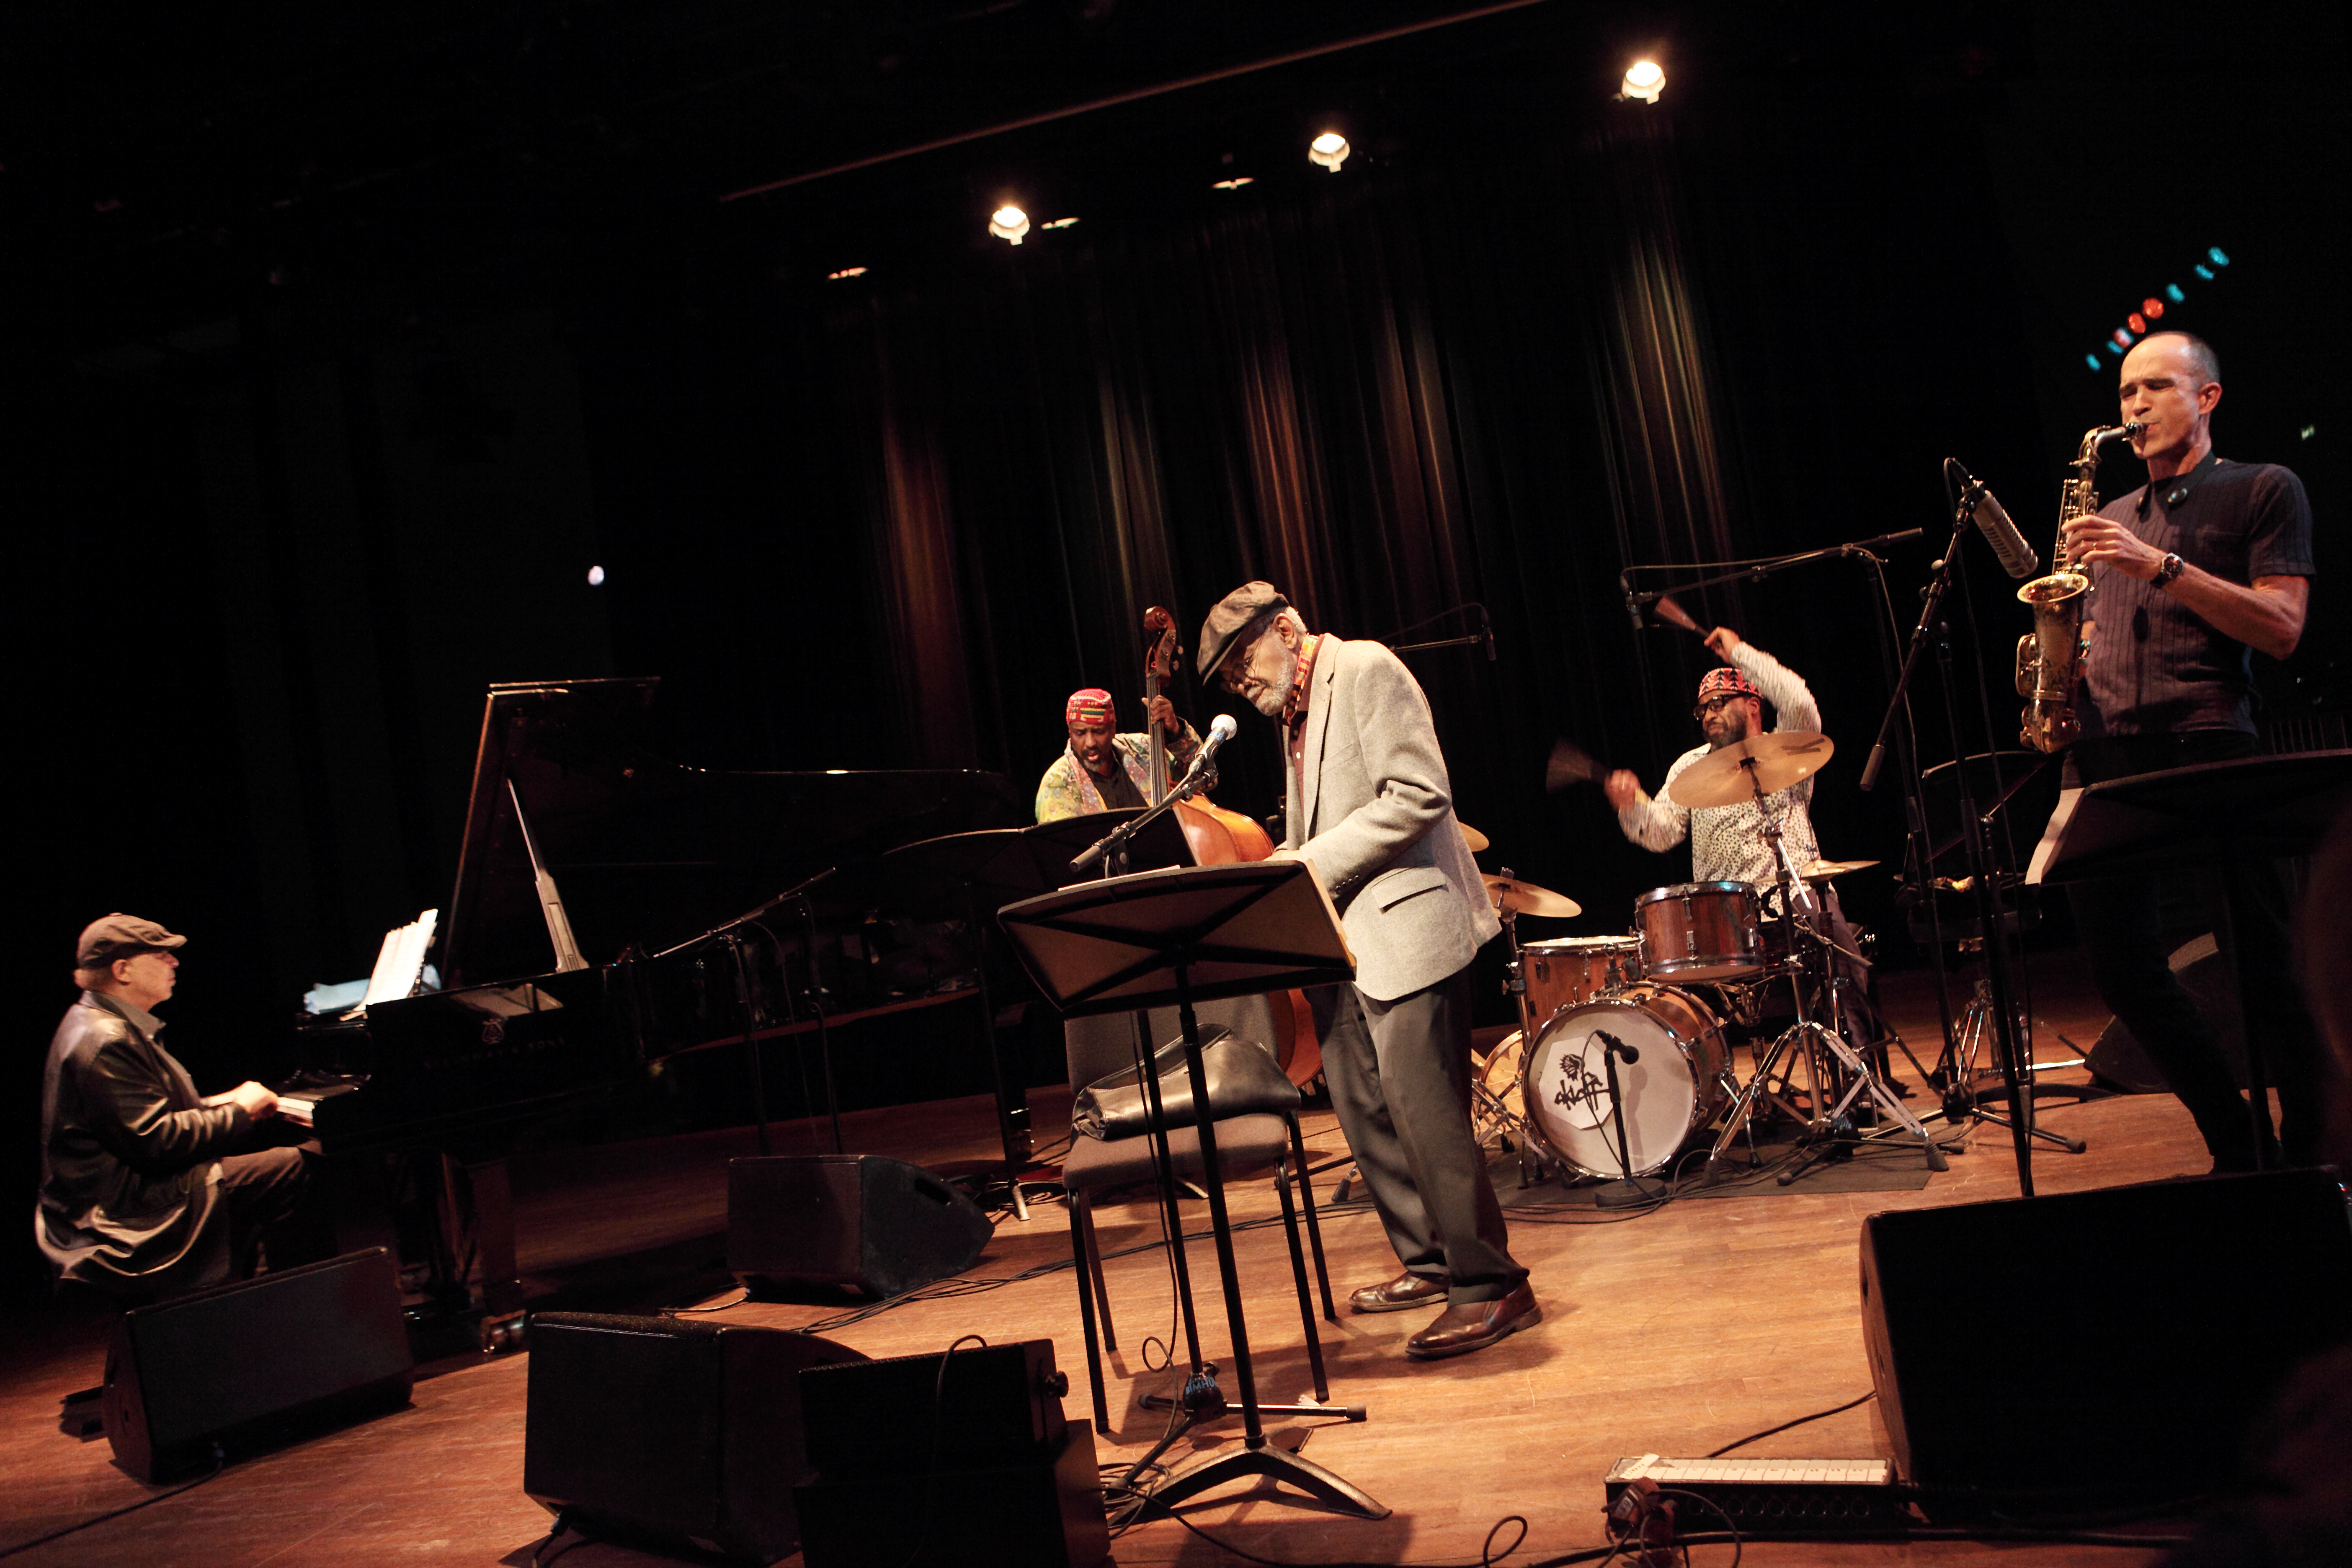 El poeta Amiri Baraka actuando con un grupo de músicos de jazz en un escenario.